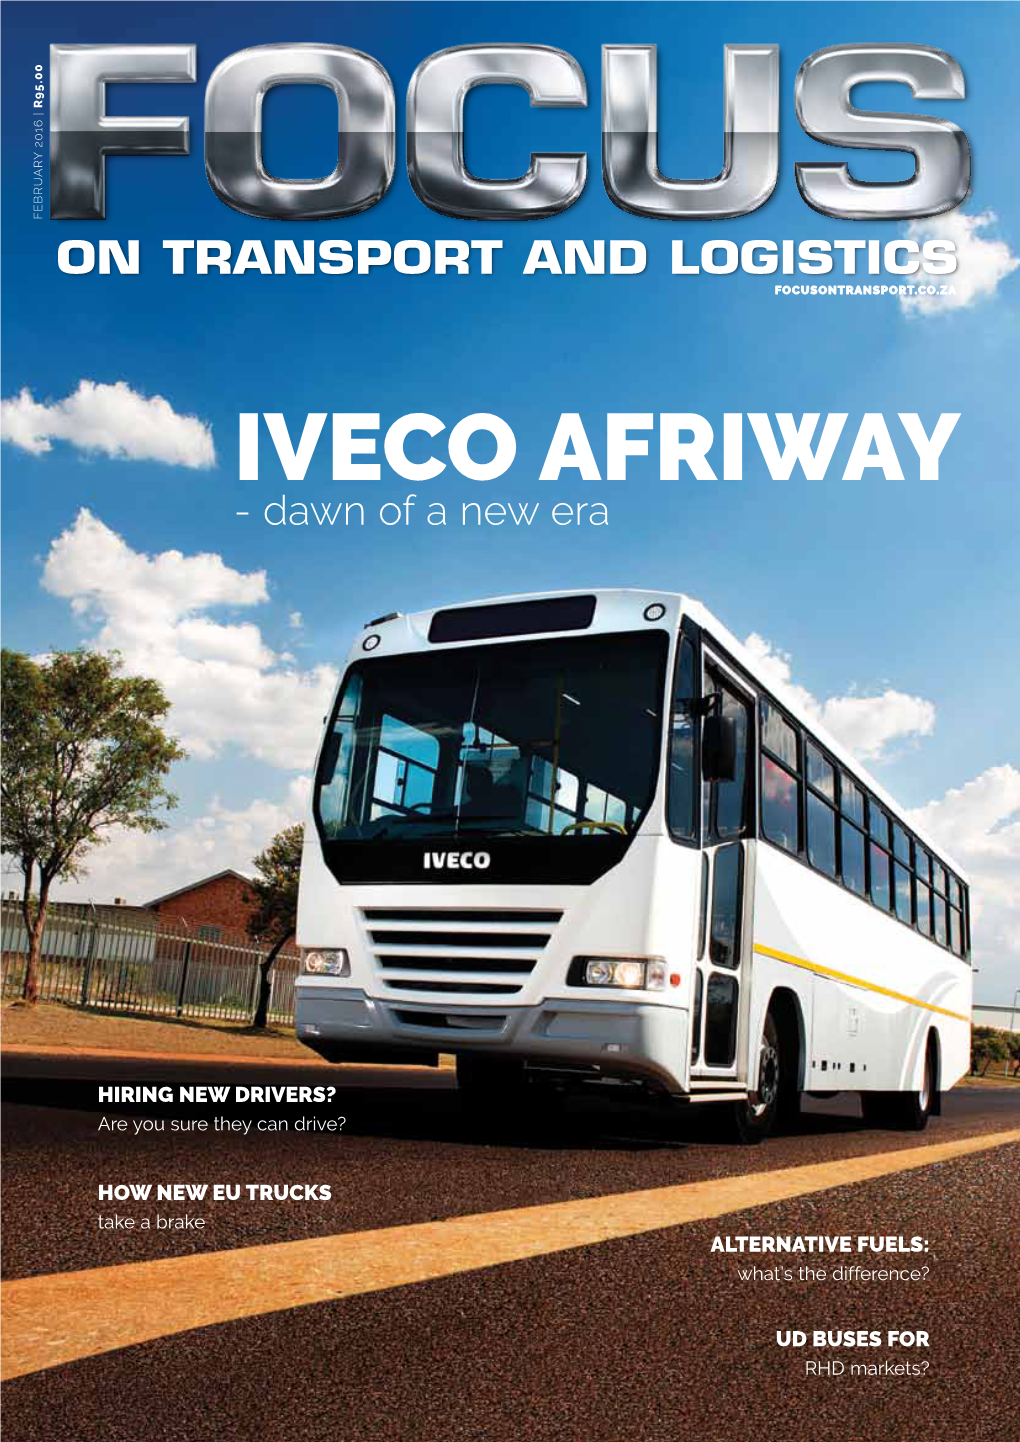 Iveco Afriway - Dawn of a New Era